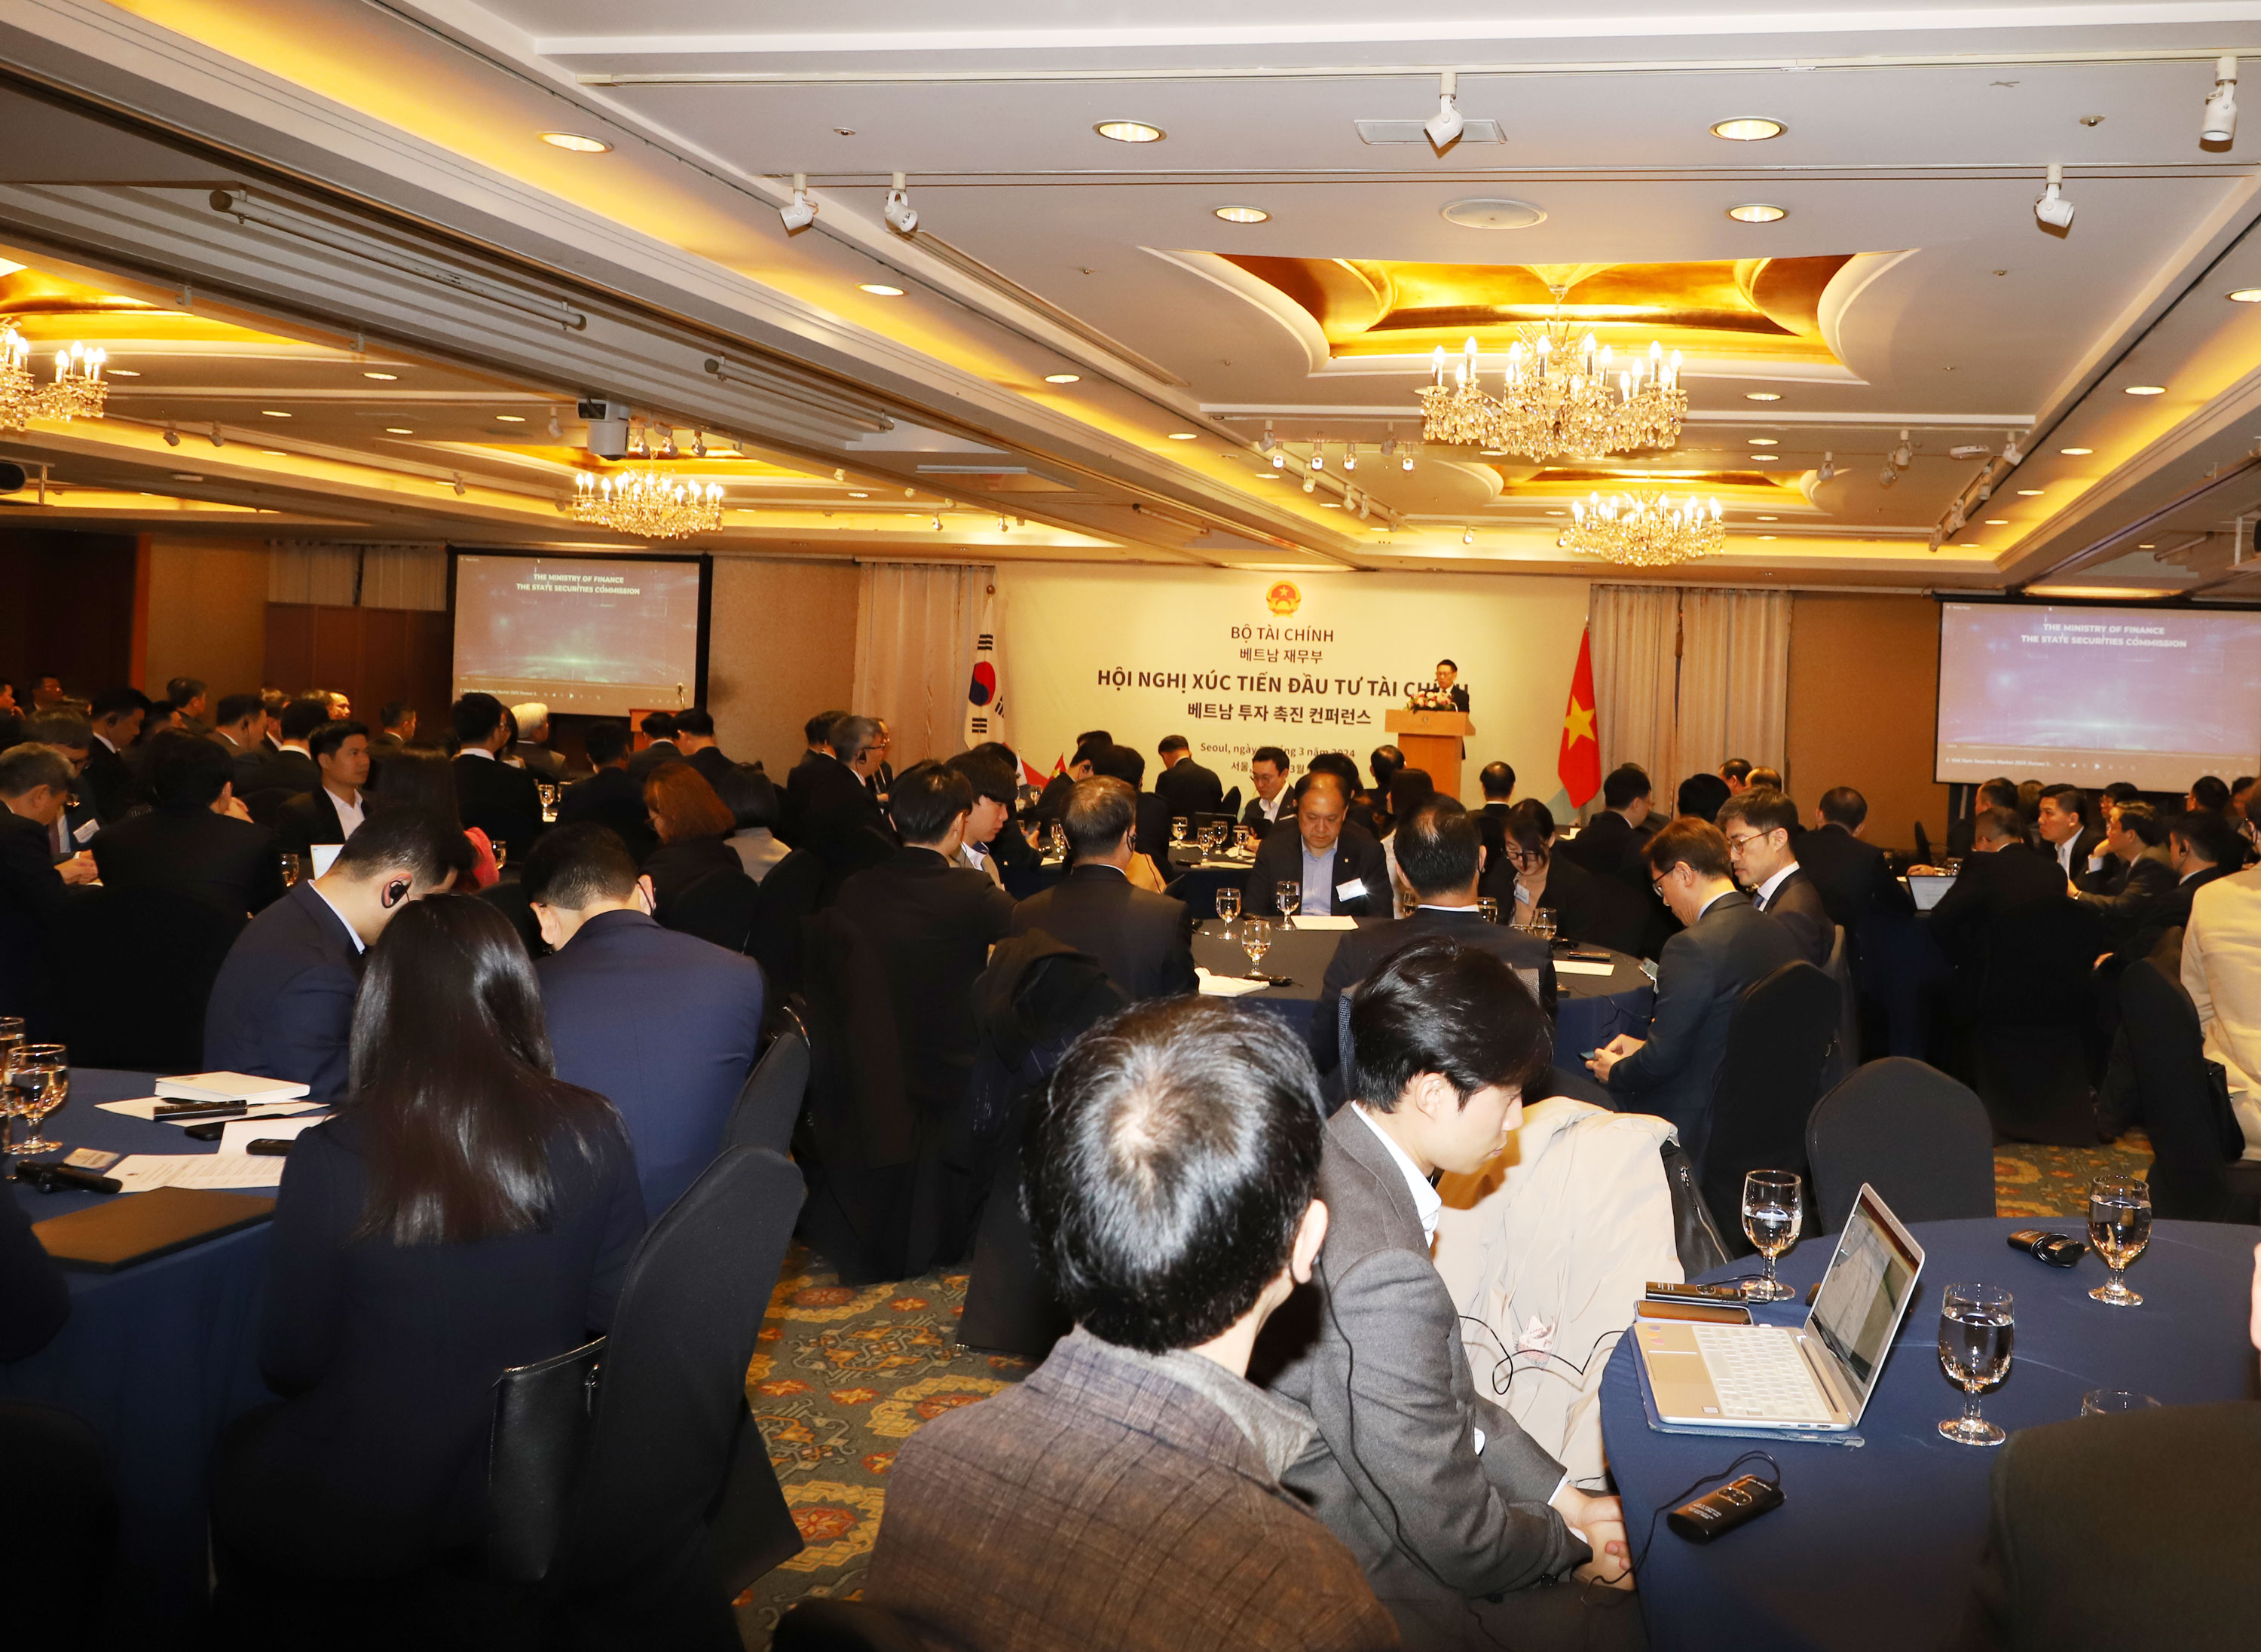 Hội nghị xúc tiến đầu tư với chủ đề “Việt Nam – Điểm đến đầu tư” do Uỷ ban Chứng khoán Nhà nước tổ chức hôm nay tại Thủ đô Seoul, Hàn Quốc. Ảnh: SSC 